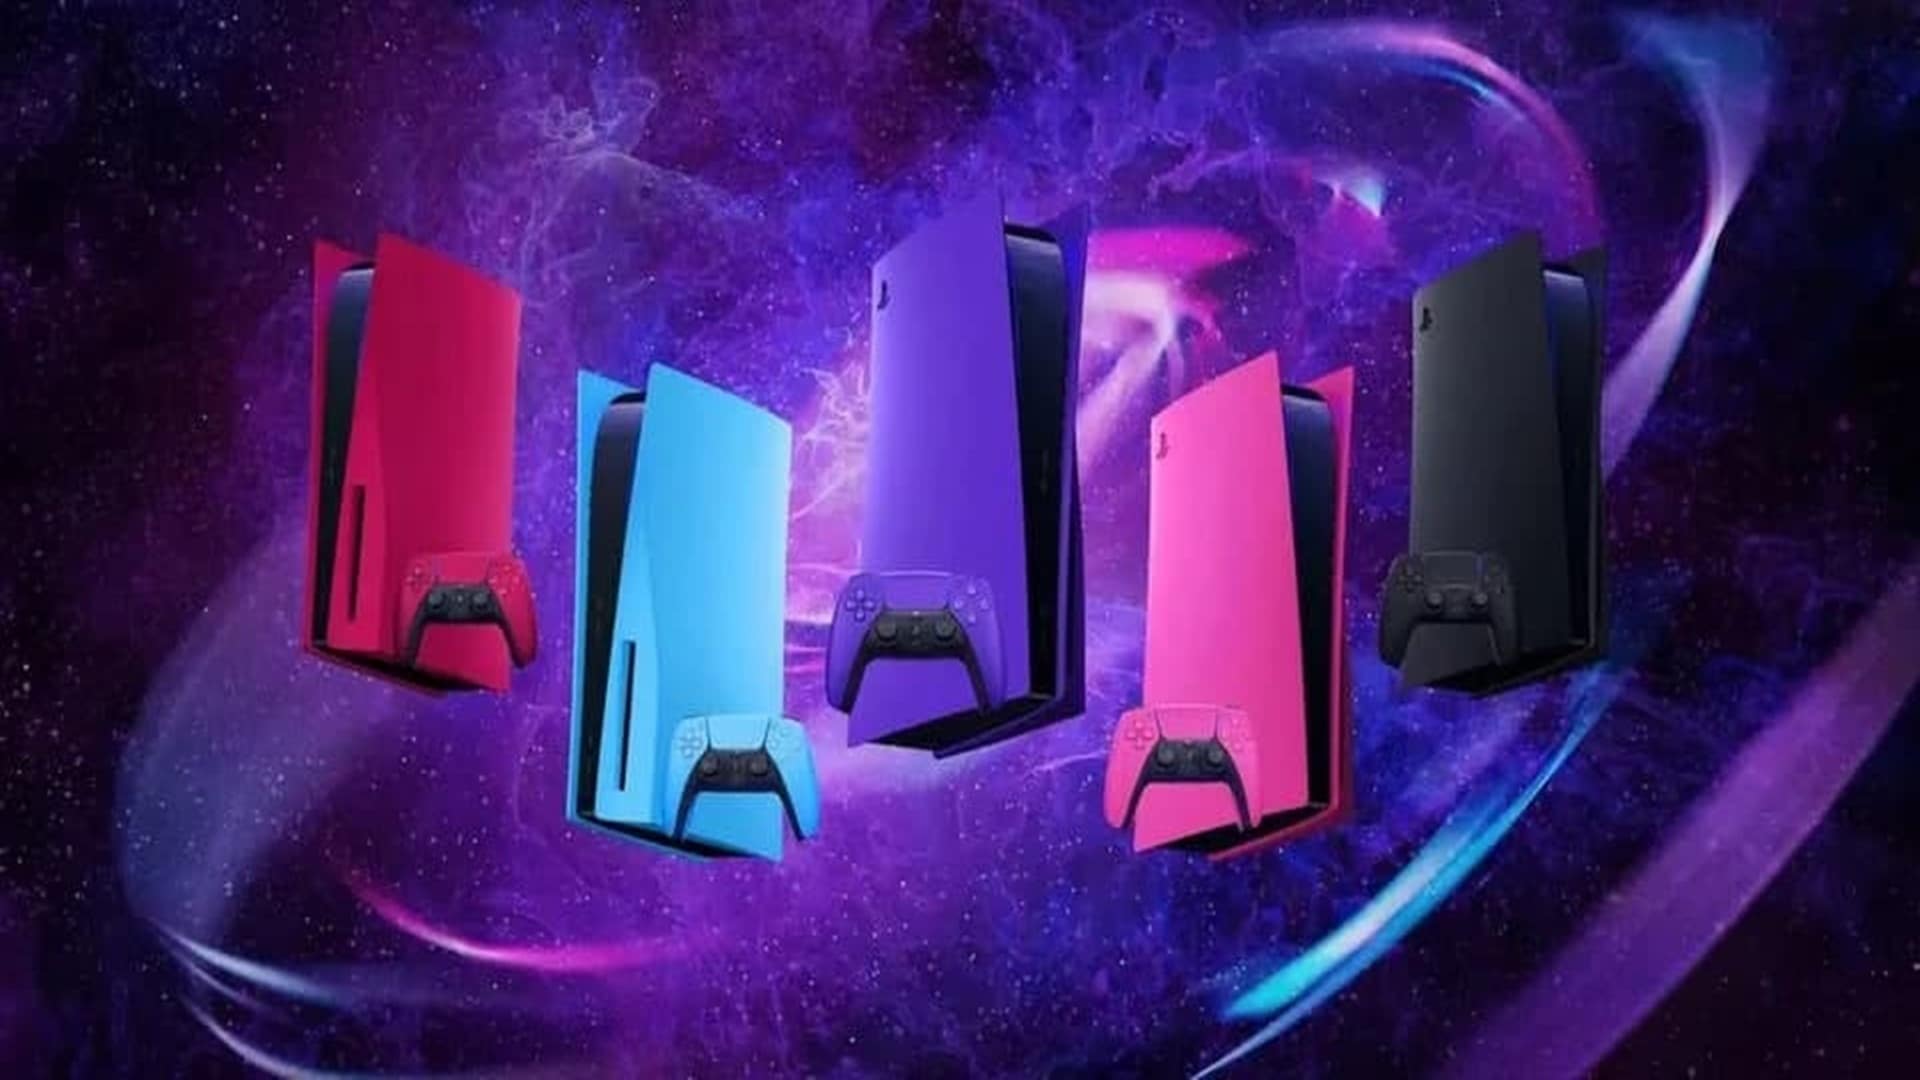 El fabricante de placas frontales de PS5, Dbrand, se burla de las placas Midnight Black de Sony, GamersRD